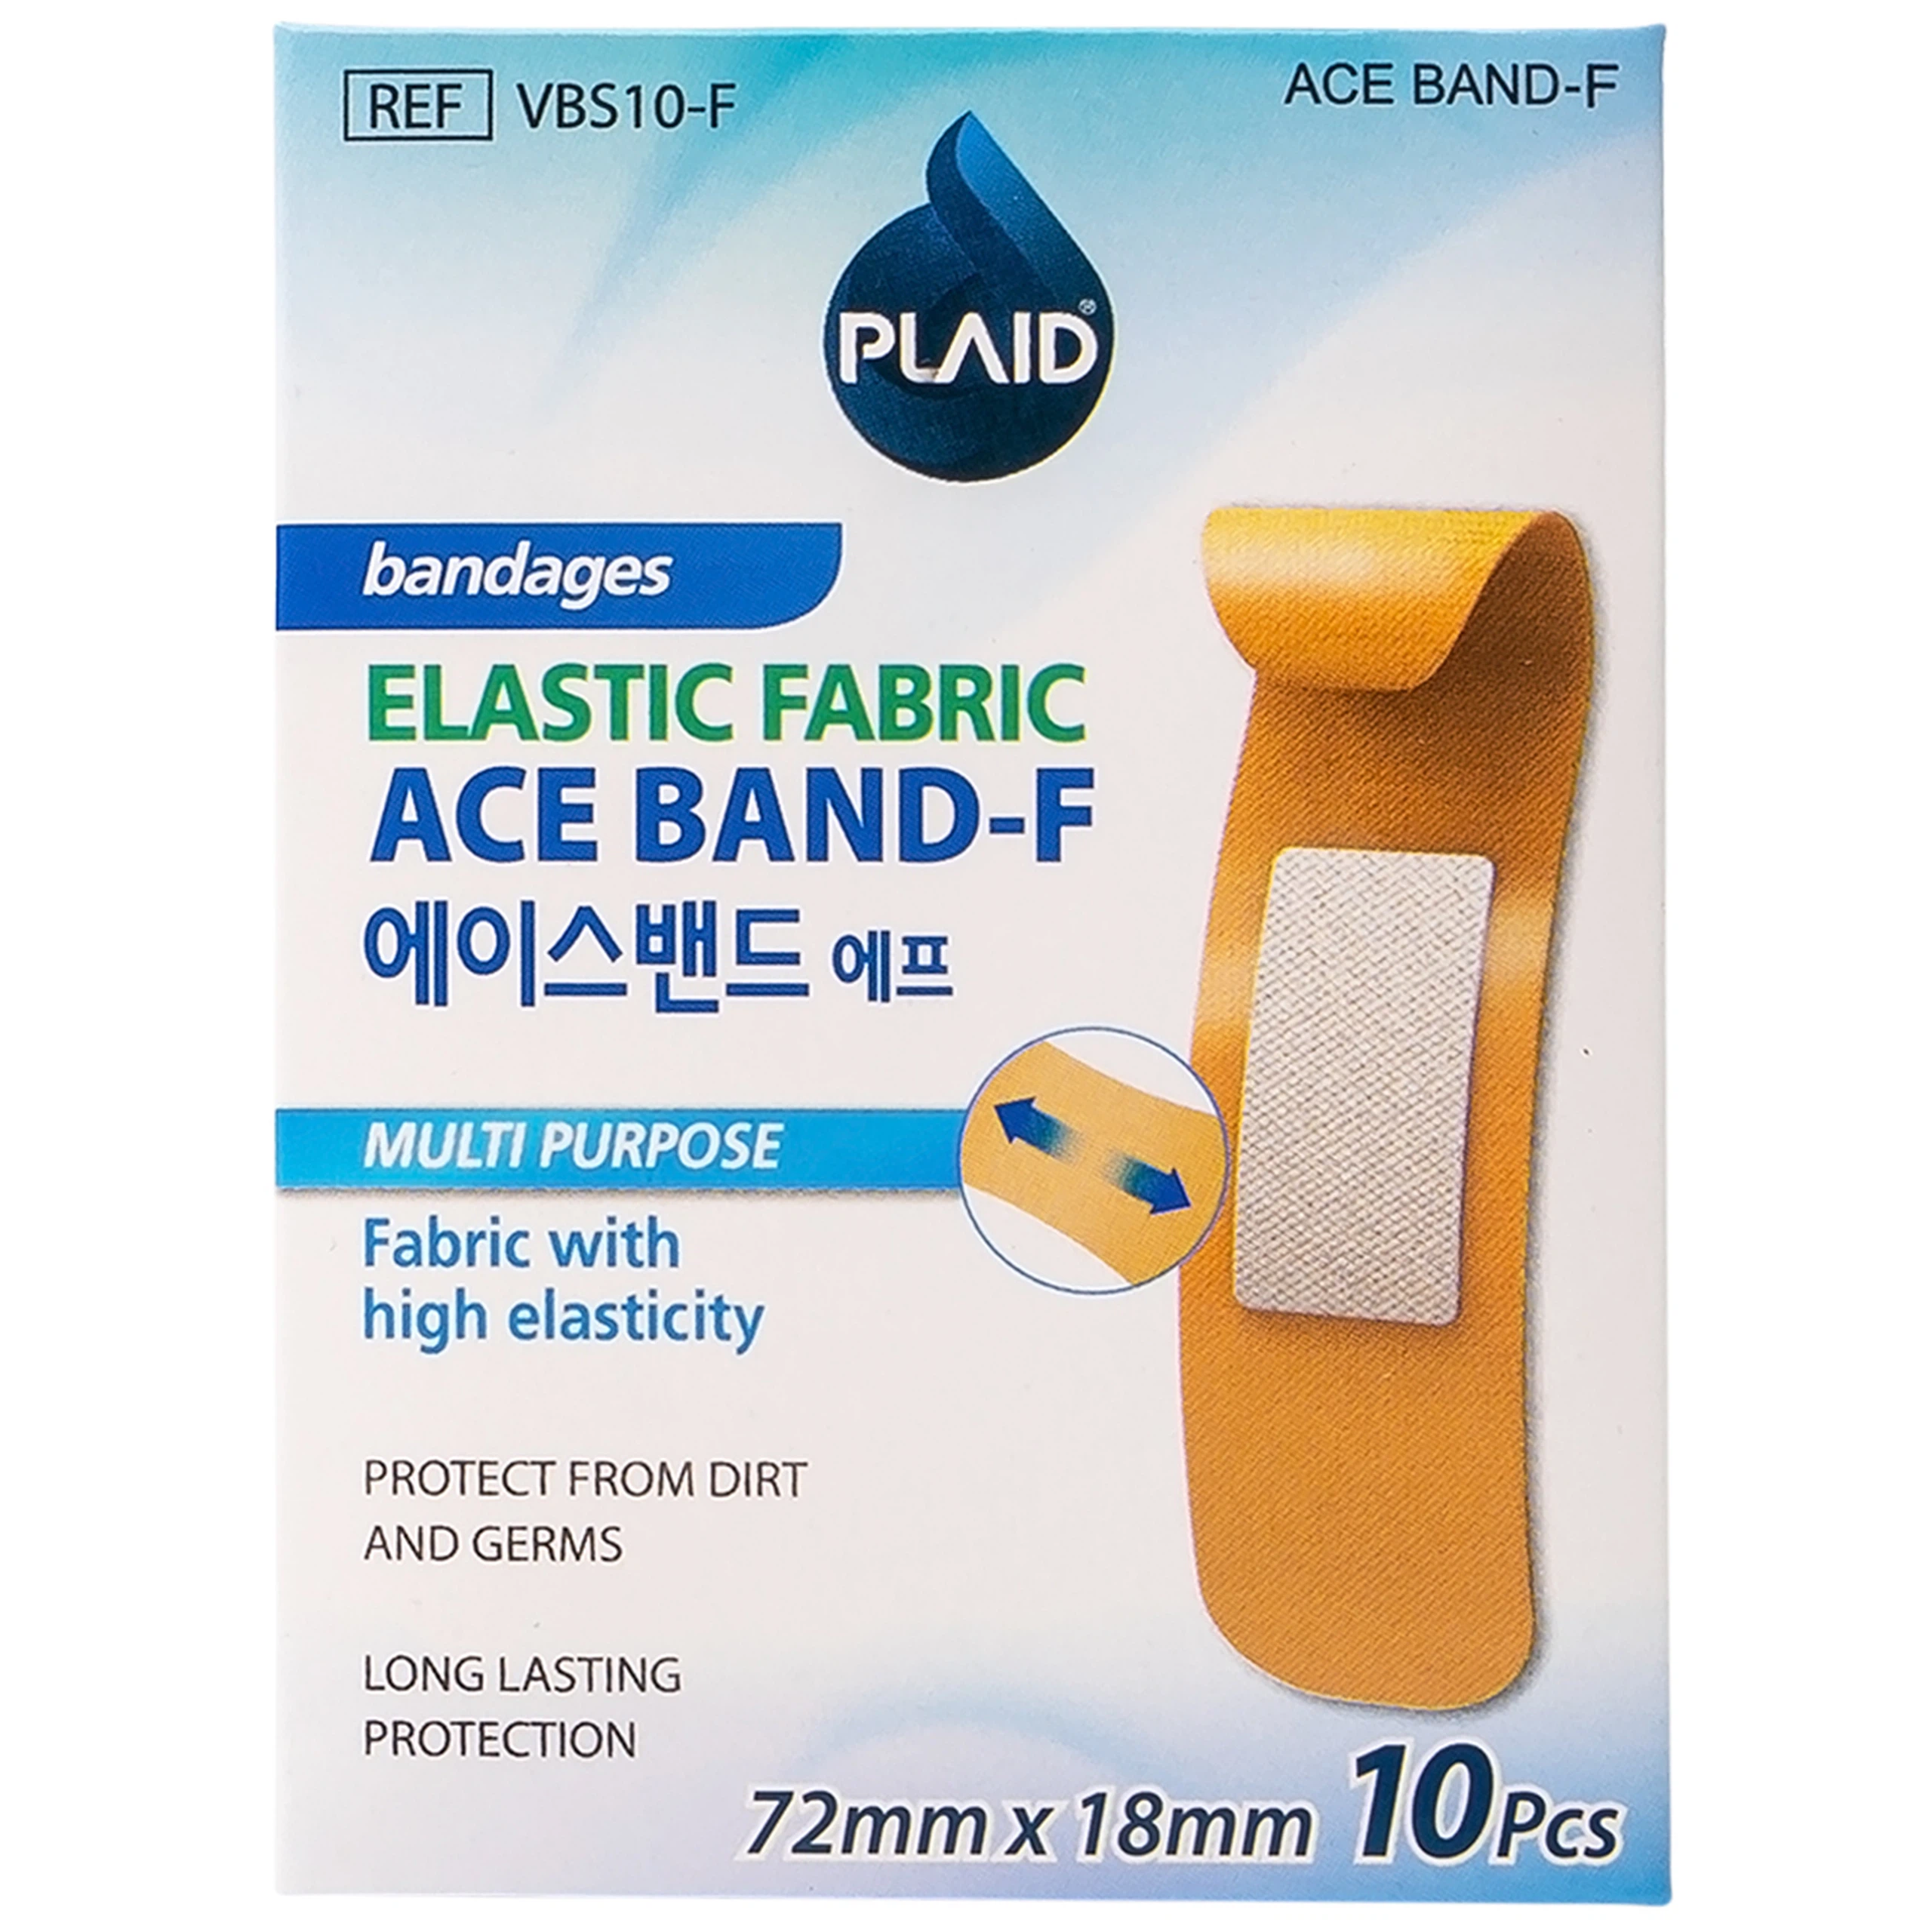 Băng keo cá nhân vải Ace Band-F bảo vệ vết thương hở nhỏ (72mm x 18mm - 10 miếng)